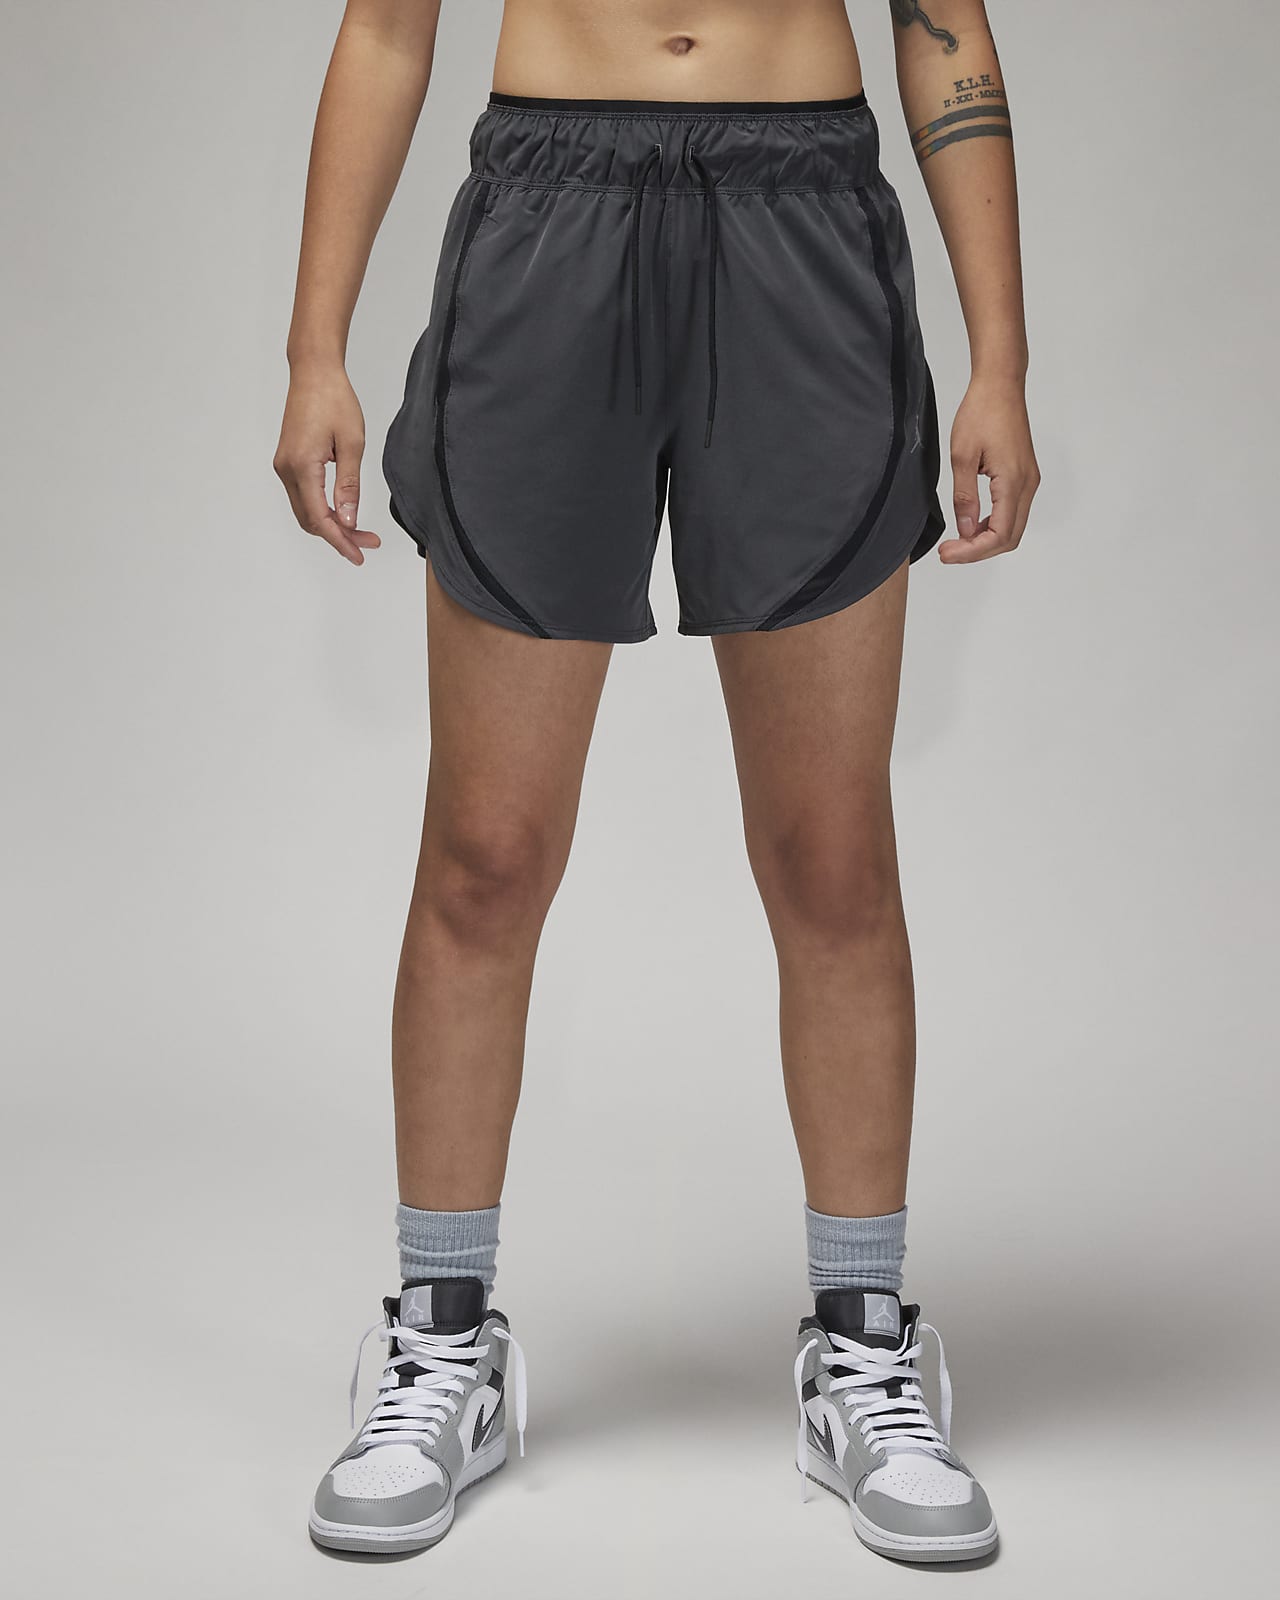 Jordan Sport Pantalons curts - Dona